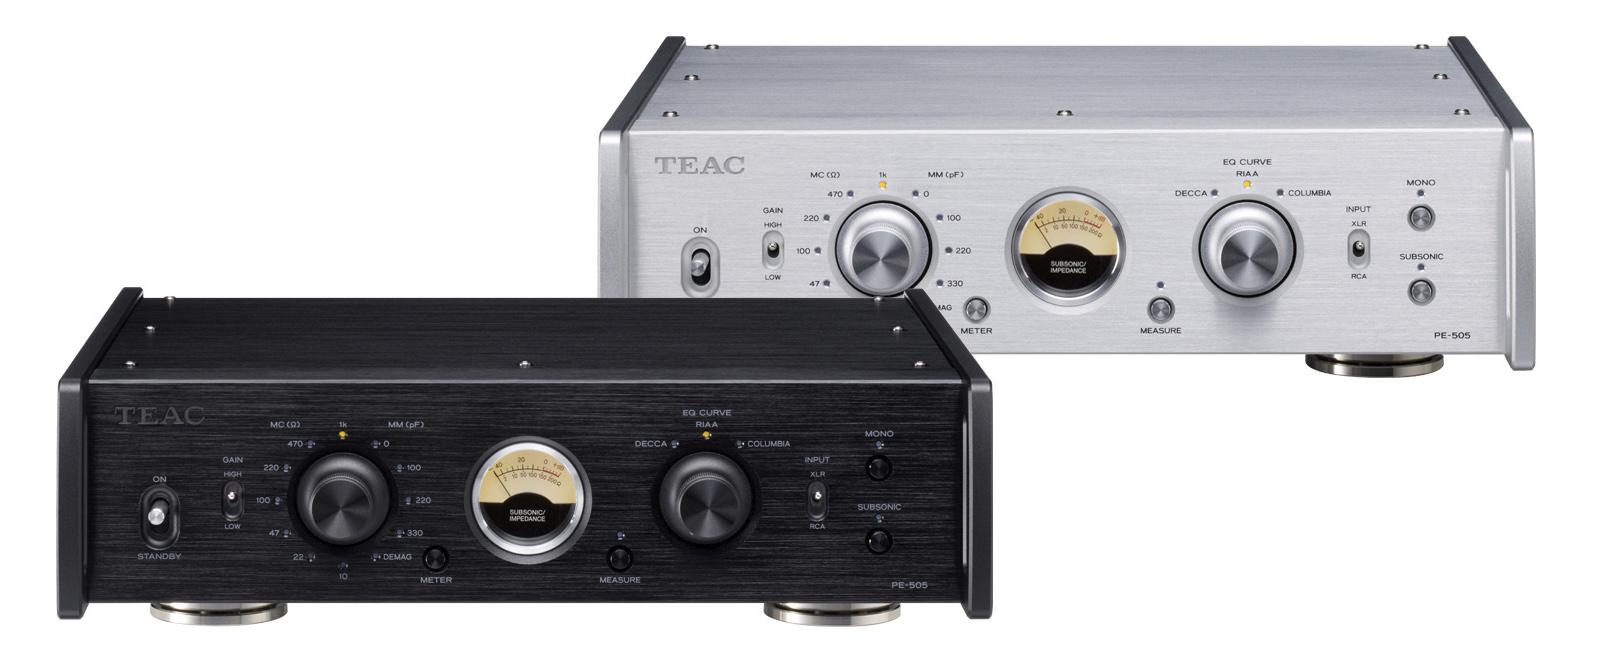 Pre-Amp Phono TEAC PE-505 | Thuấn Audio